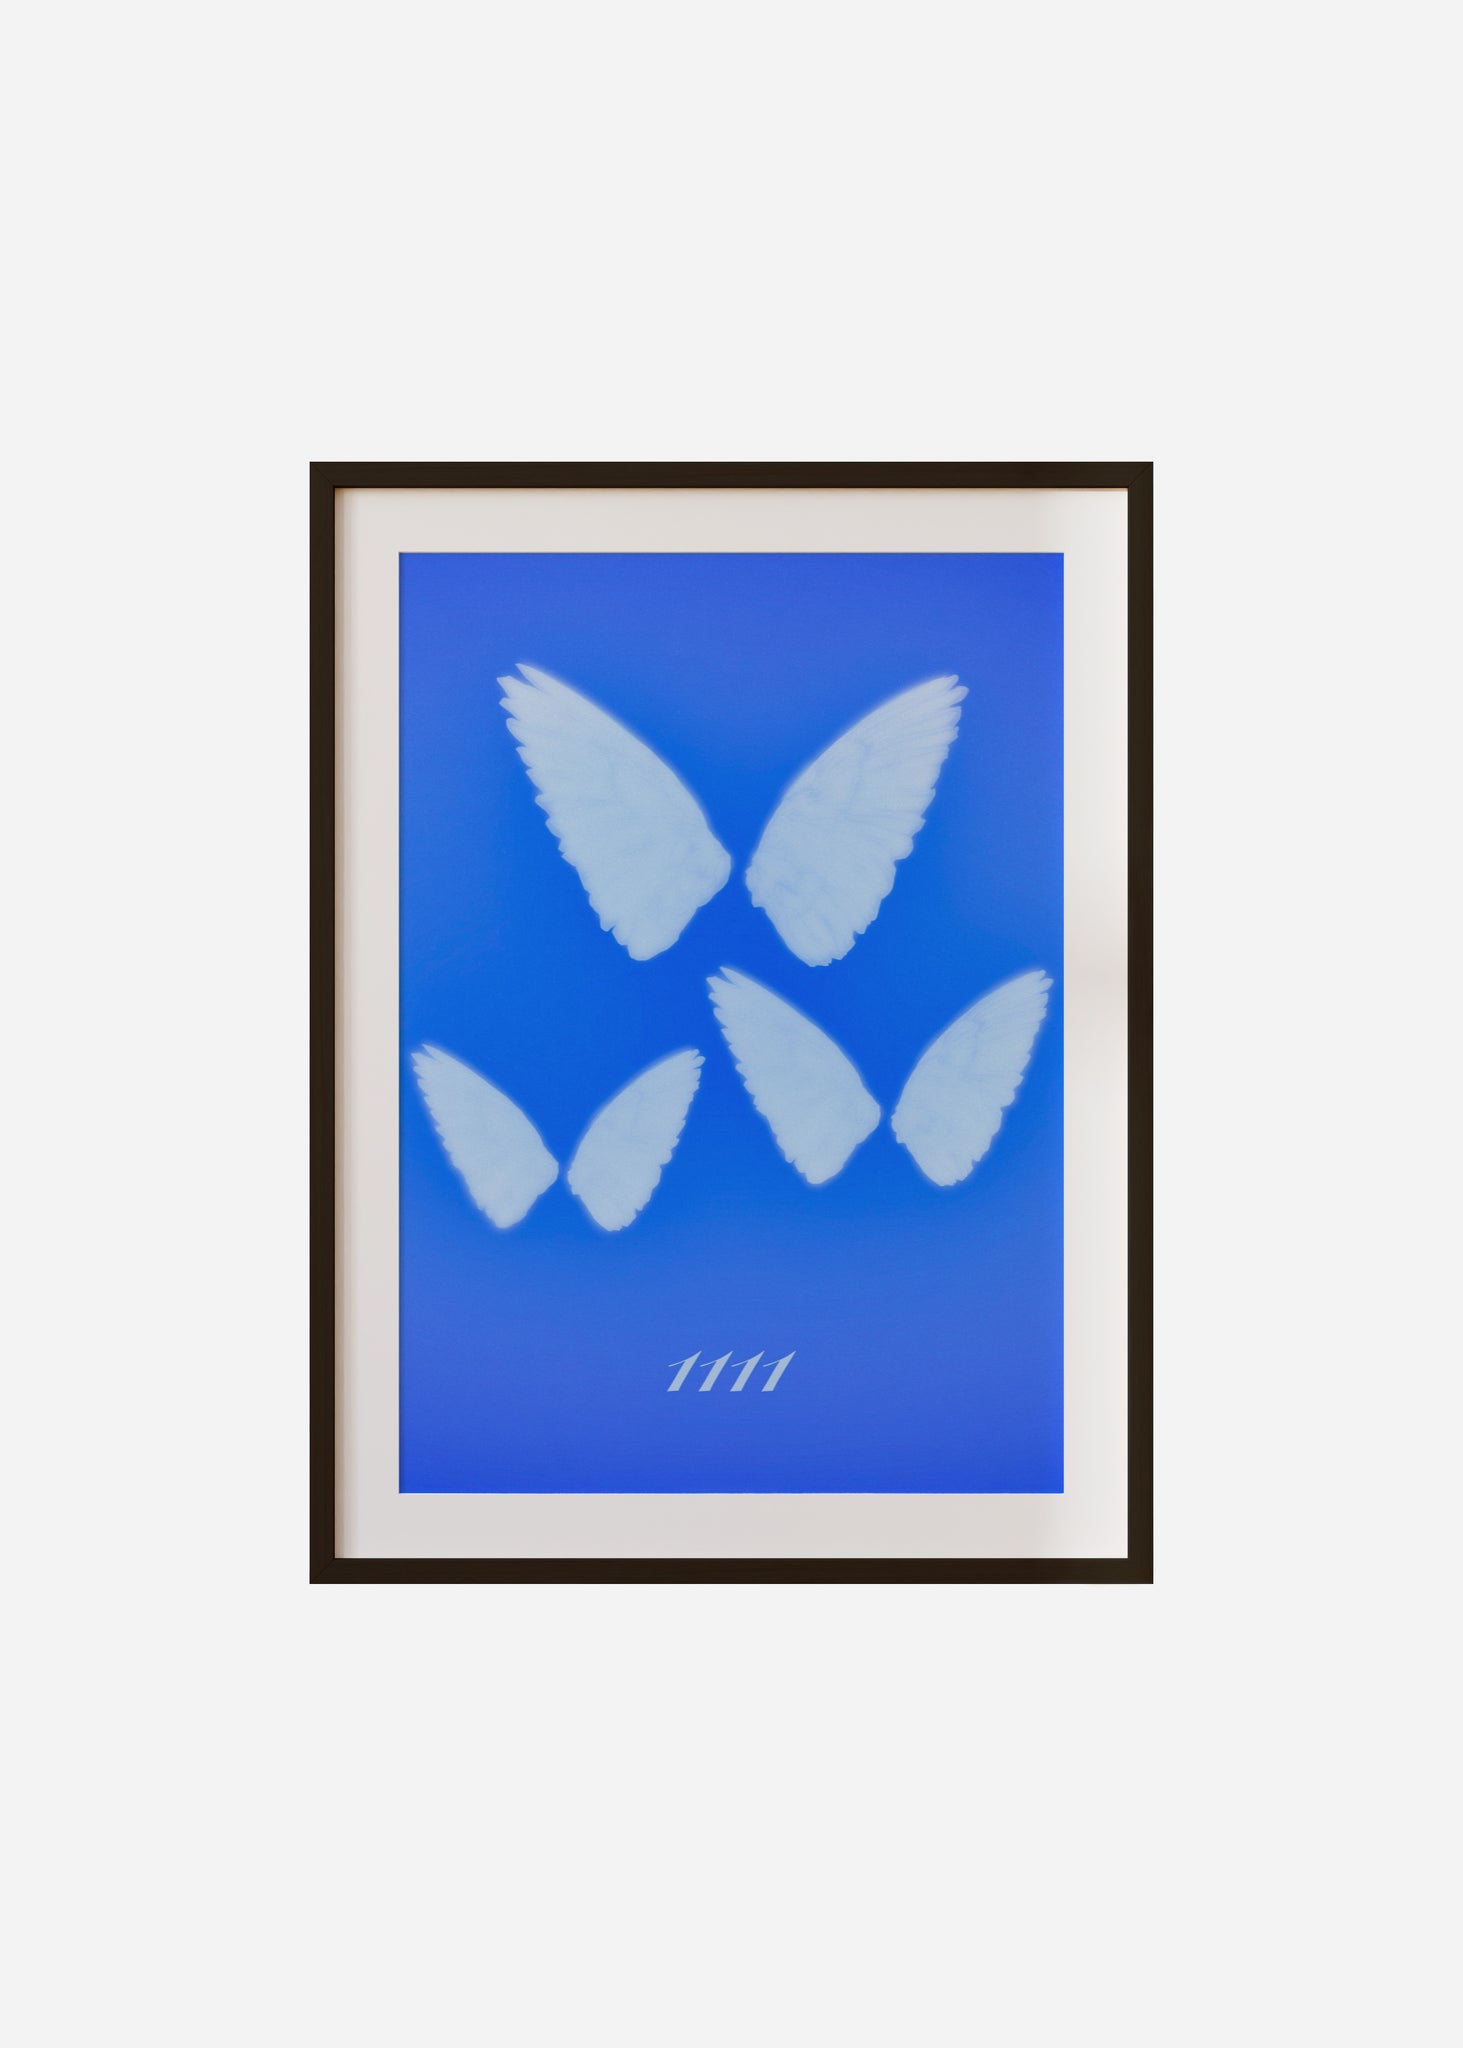 Angel Wings 1111 Framed & Mounted Print